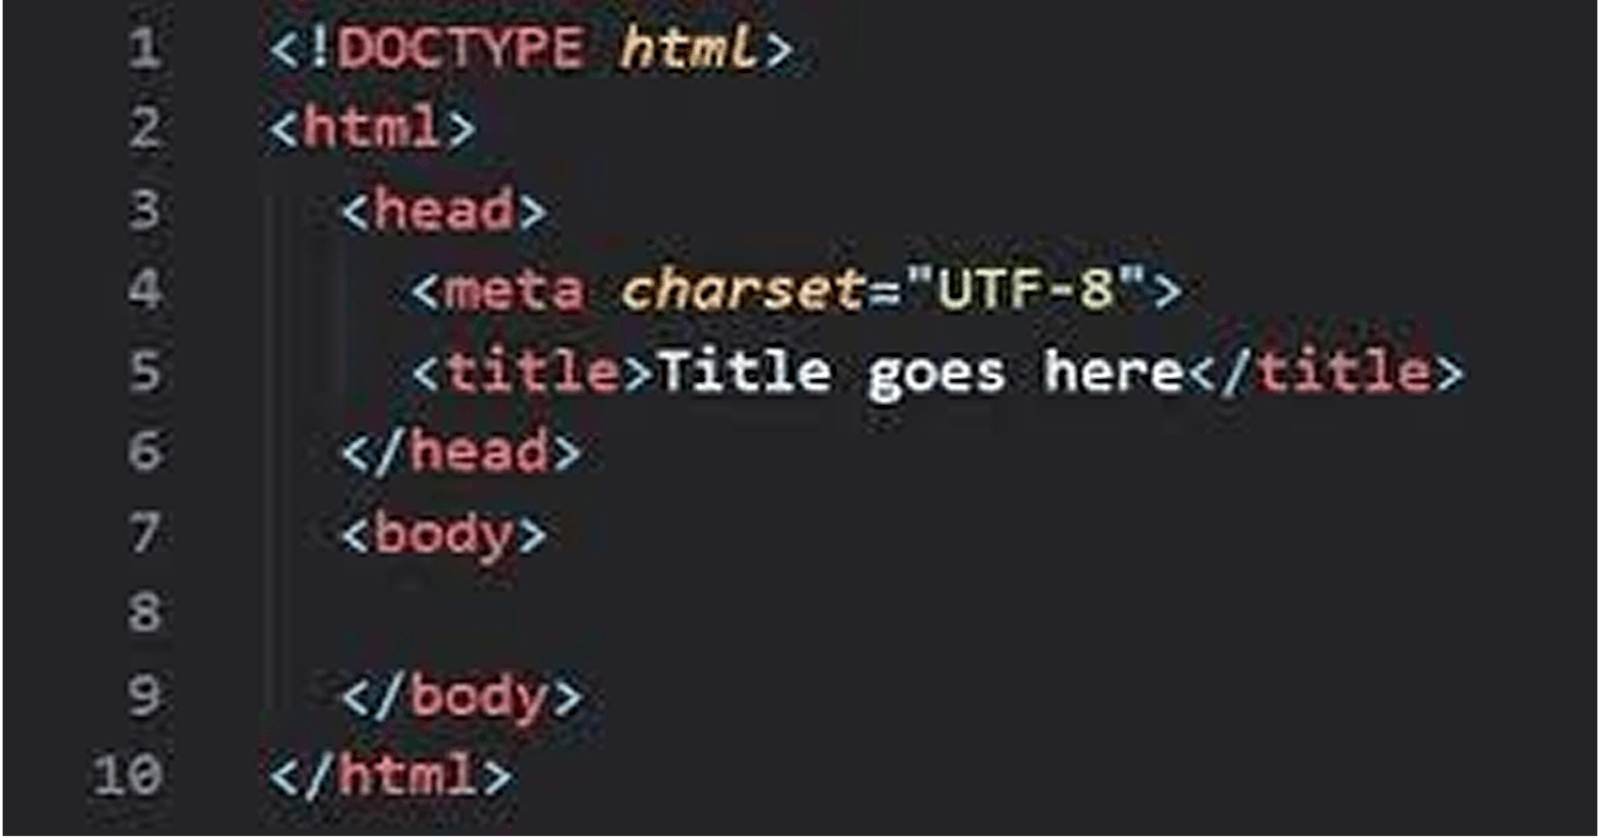 HTML Fundamentals